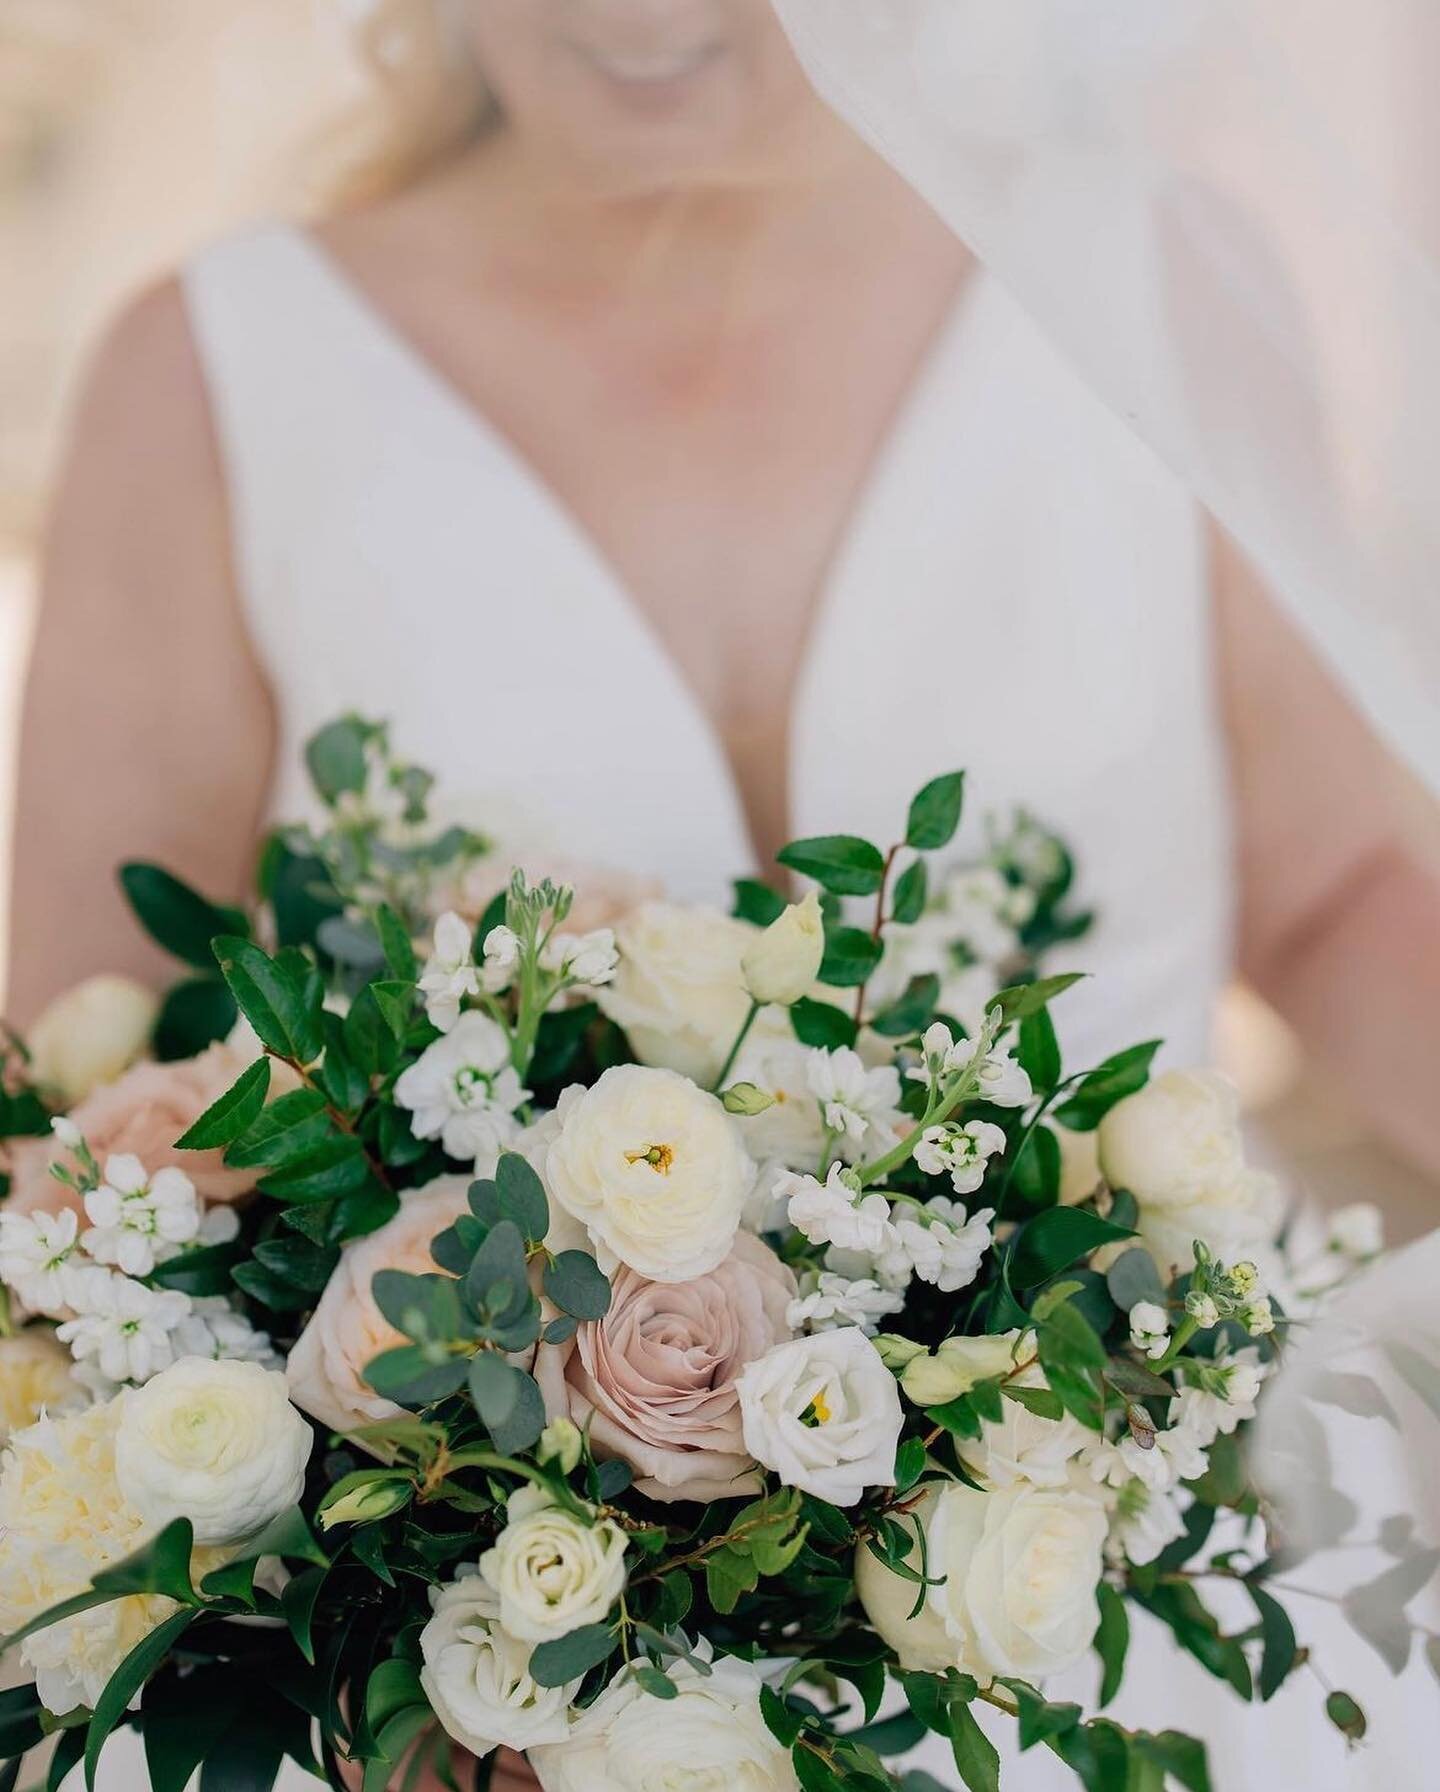 We love a bouquet close up 🤩